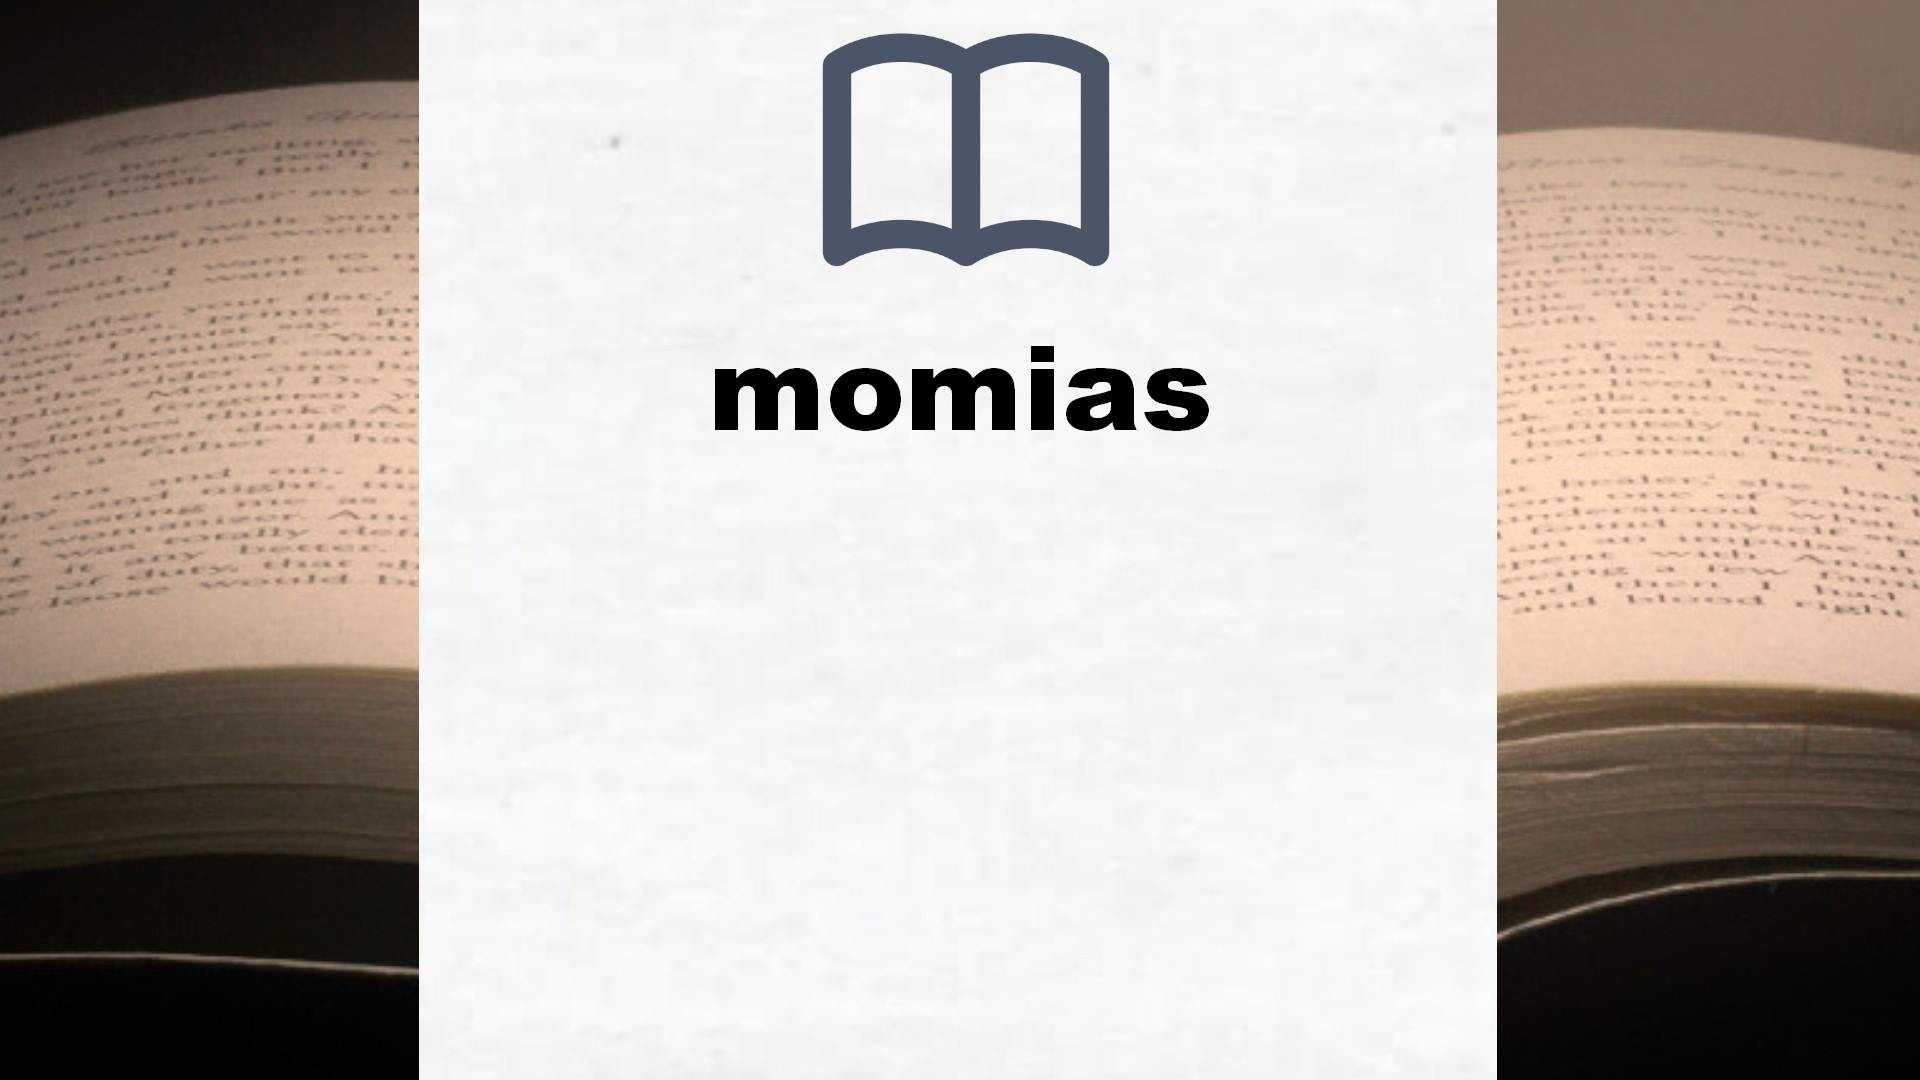 Libros sobre momias